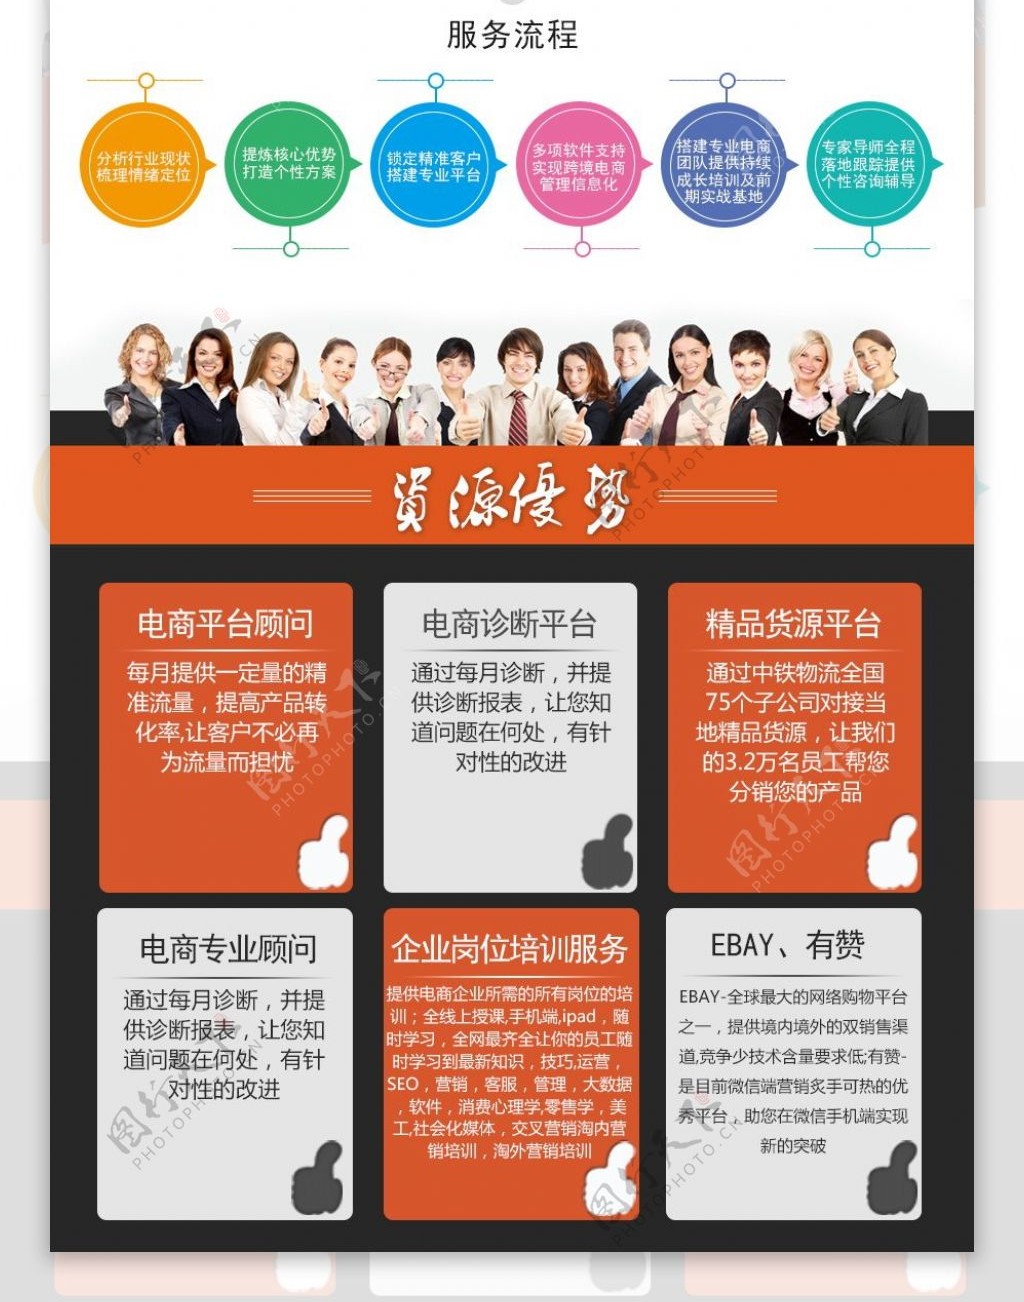 战略咨询公司网站电子商务橙色模块设计排版